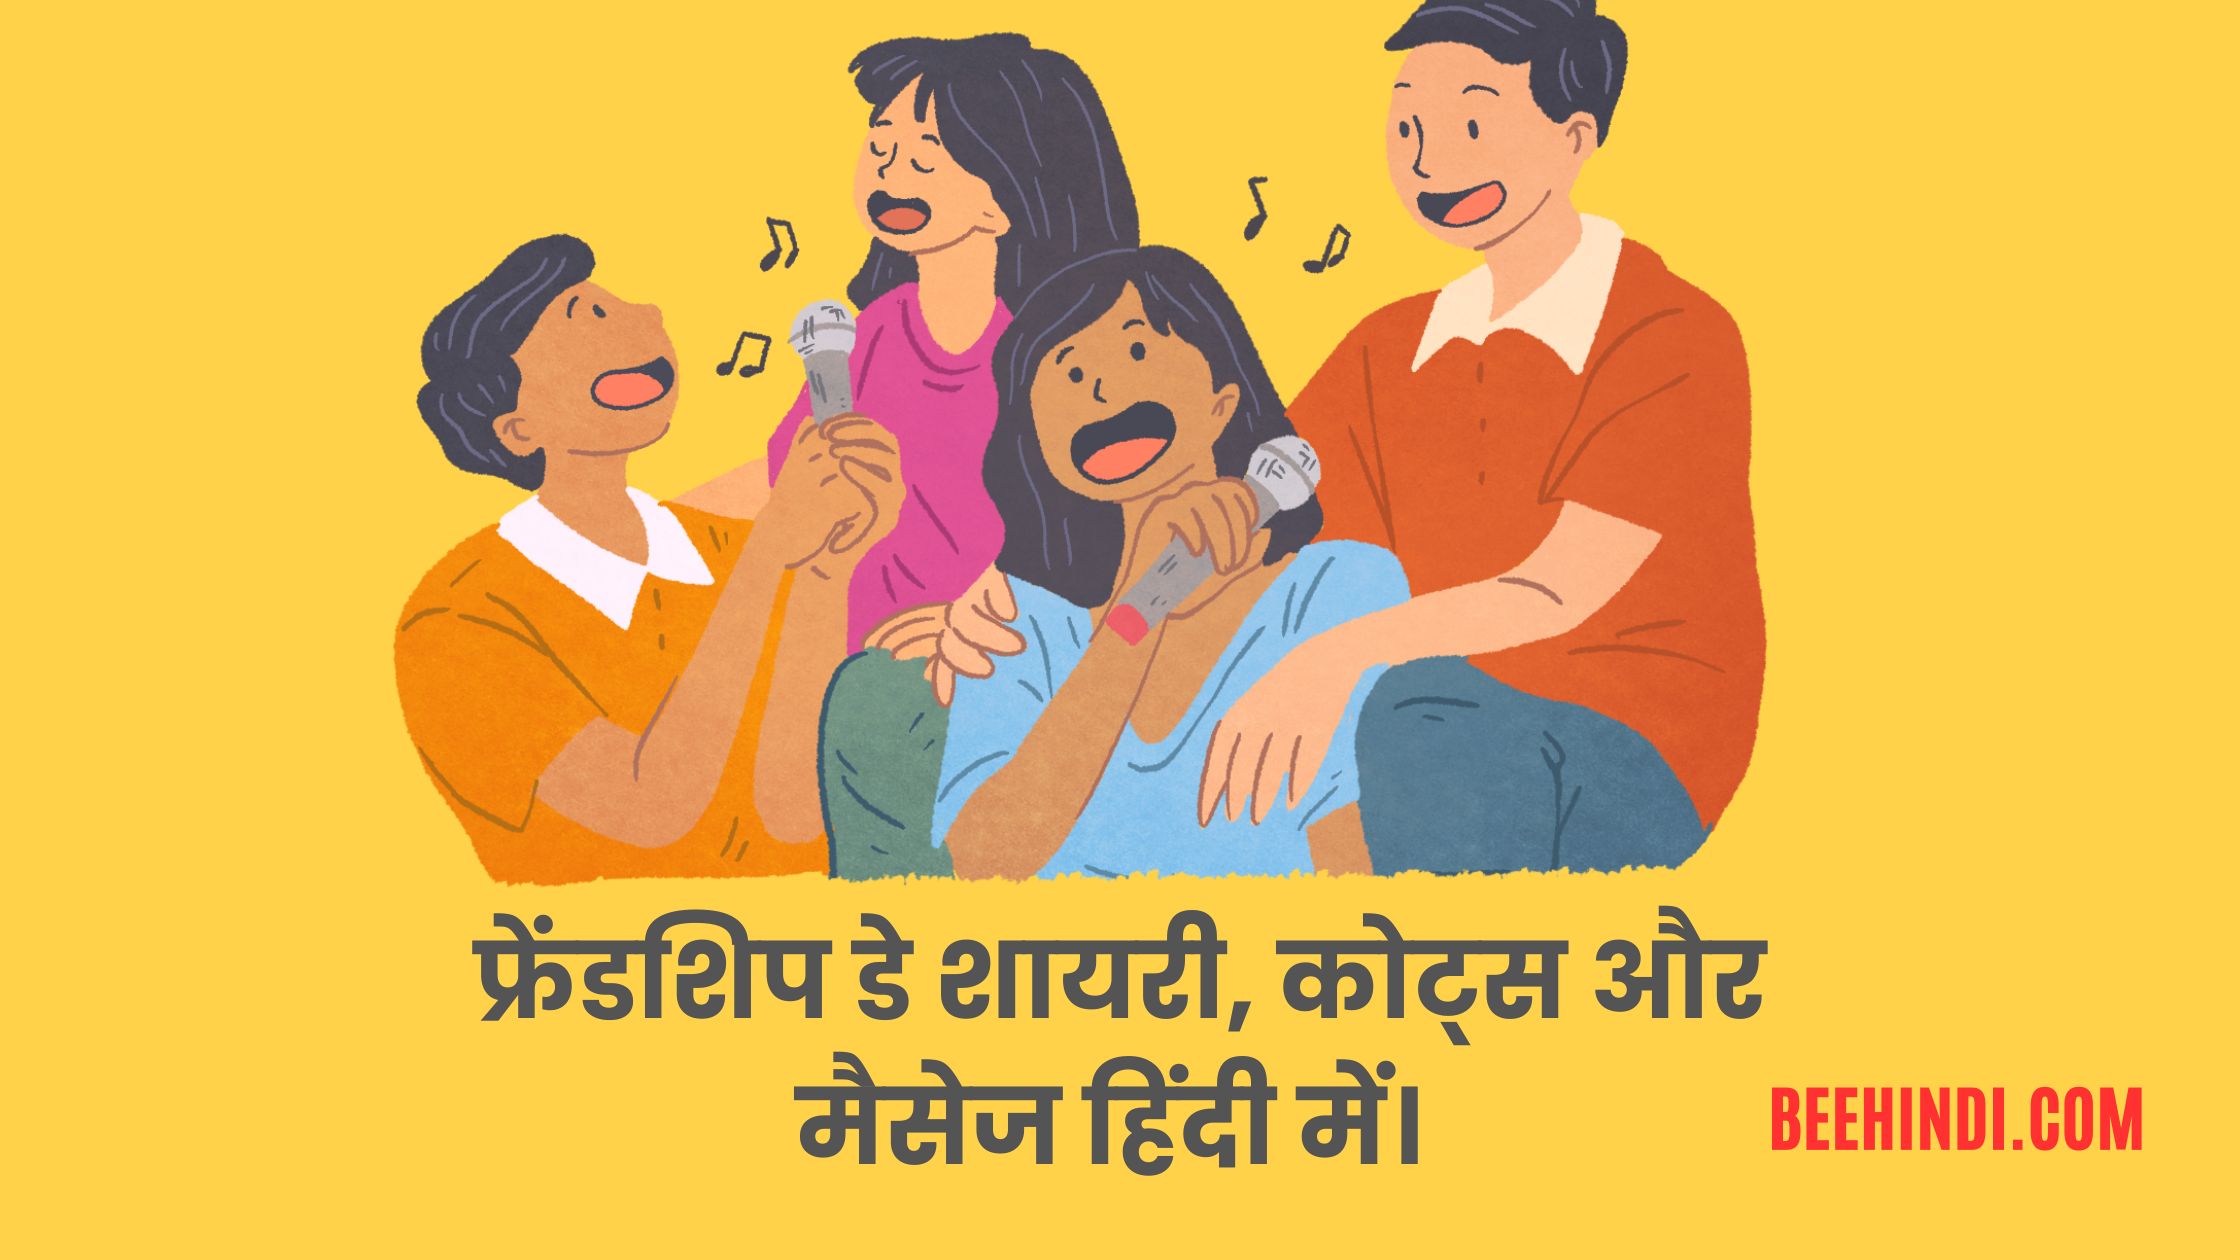 फ्रेंडशिप डे शायरी, कोट्स और मैसेज हिंदी में। – Friendship Day Shayari, Quotes and Messages in Hindi.